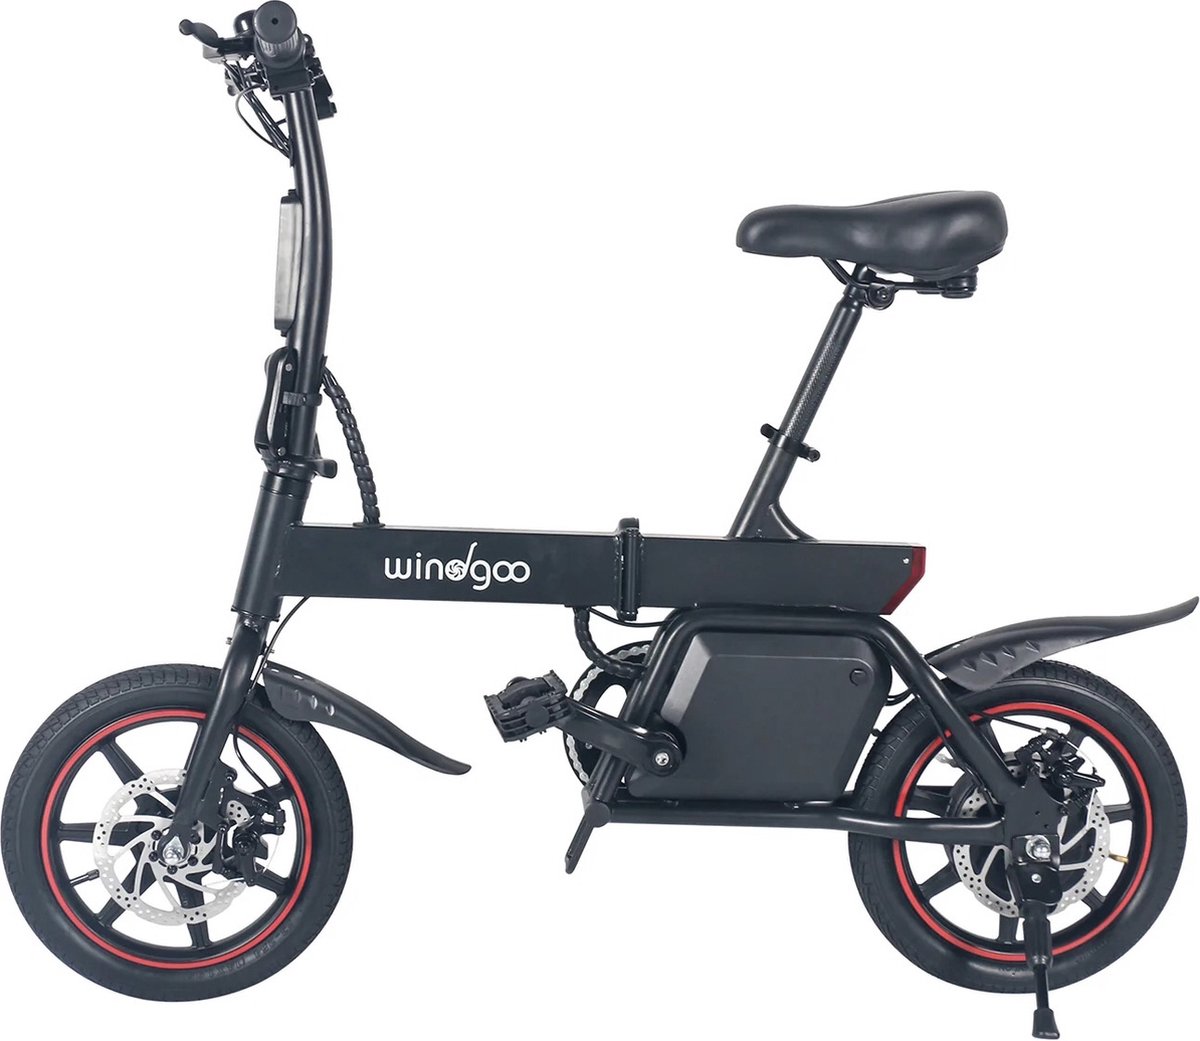 EasyGO Windgoo B20 - Elektrische fiets - met trapondersteuning - Zwart - 25 km per uur